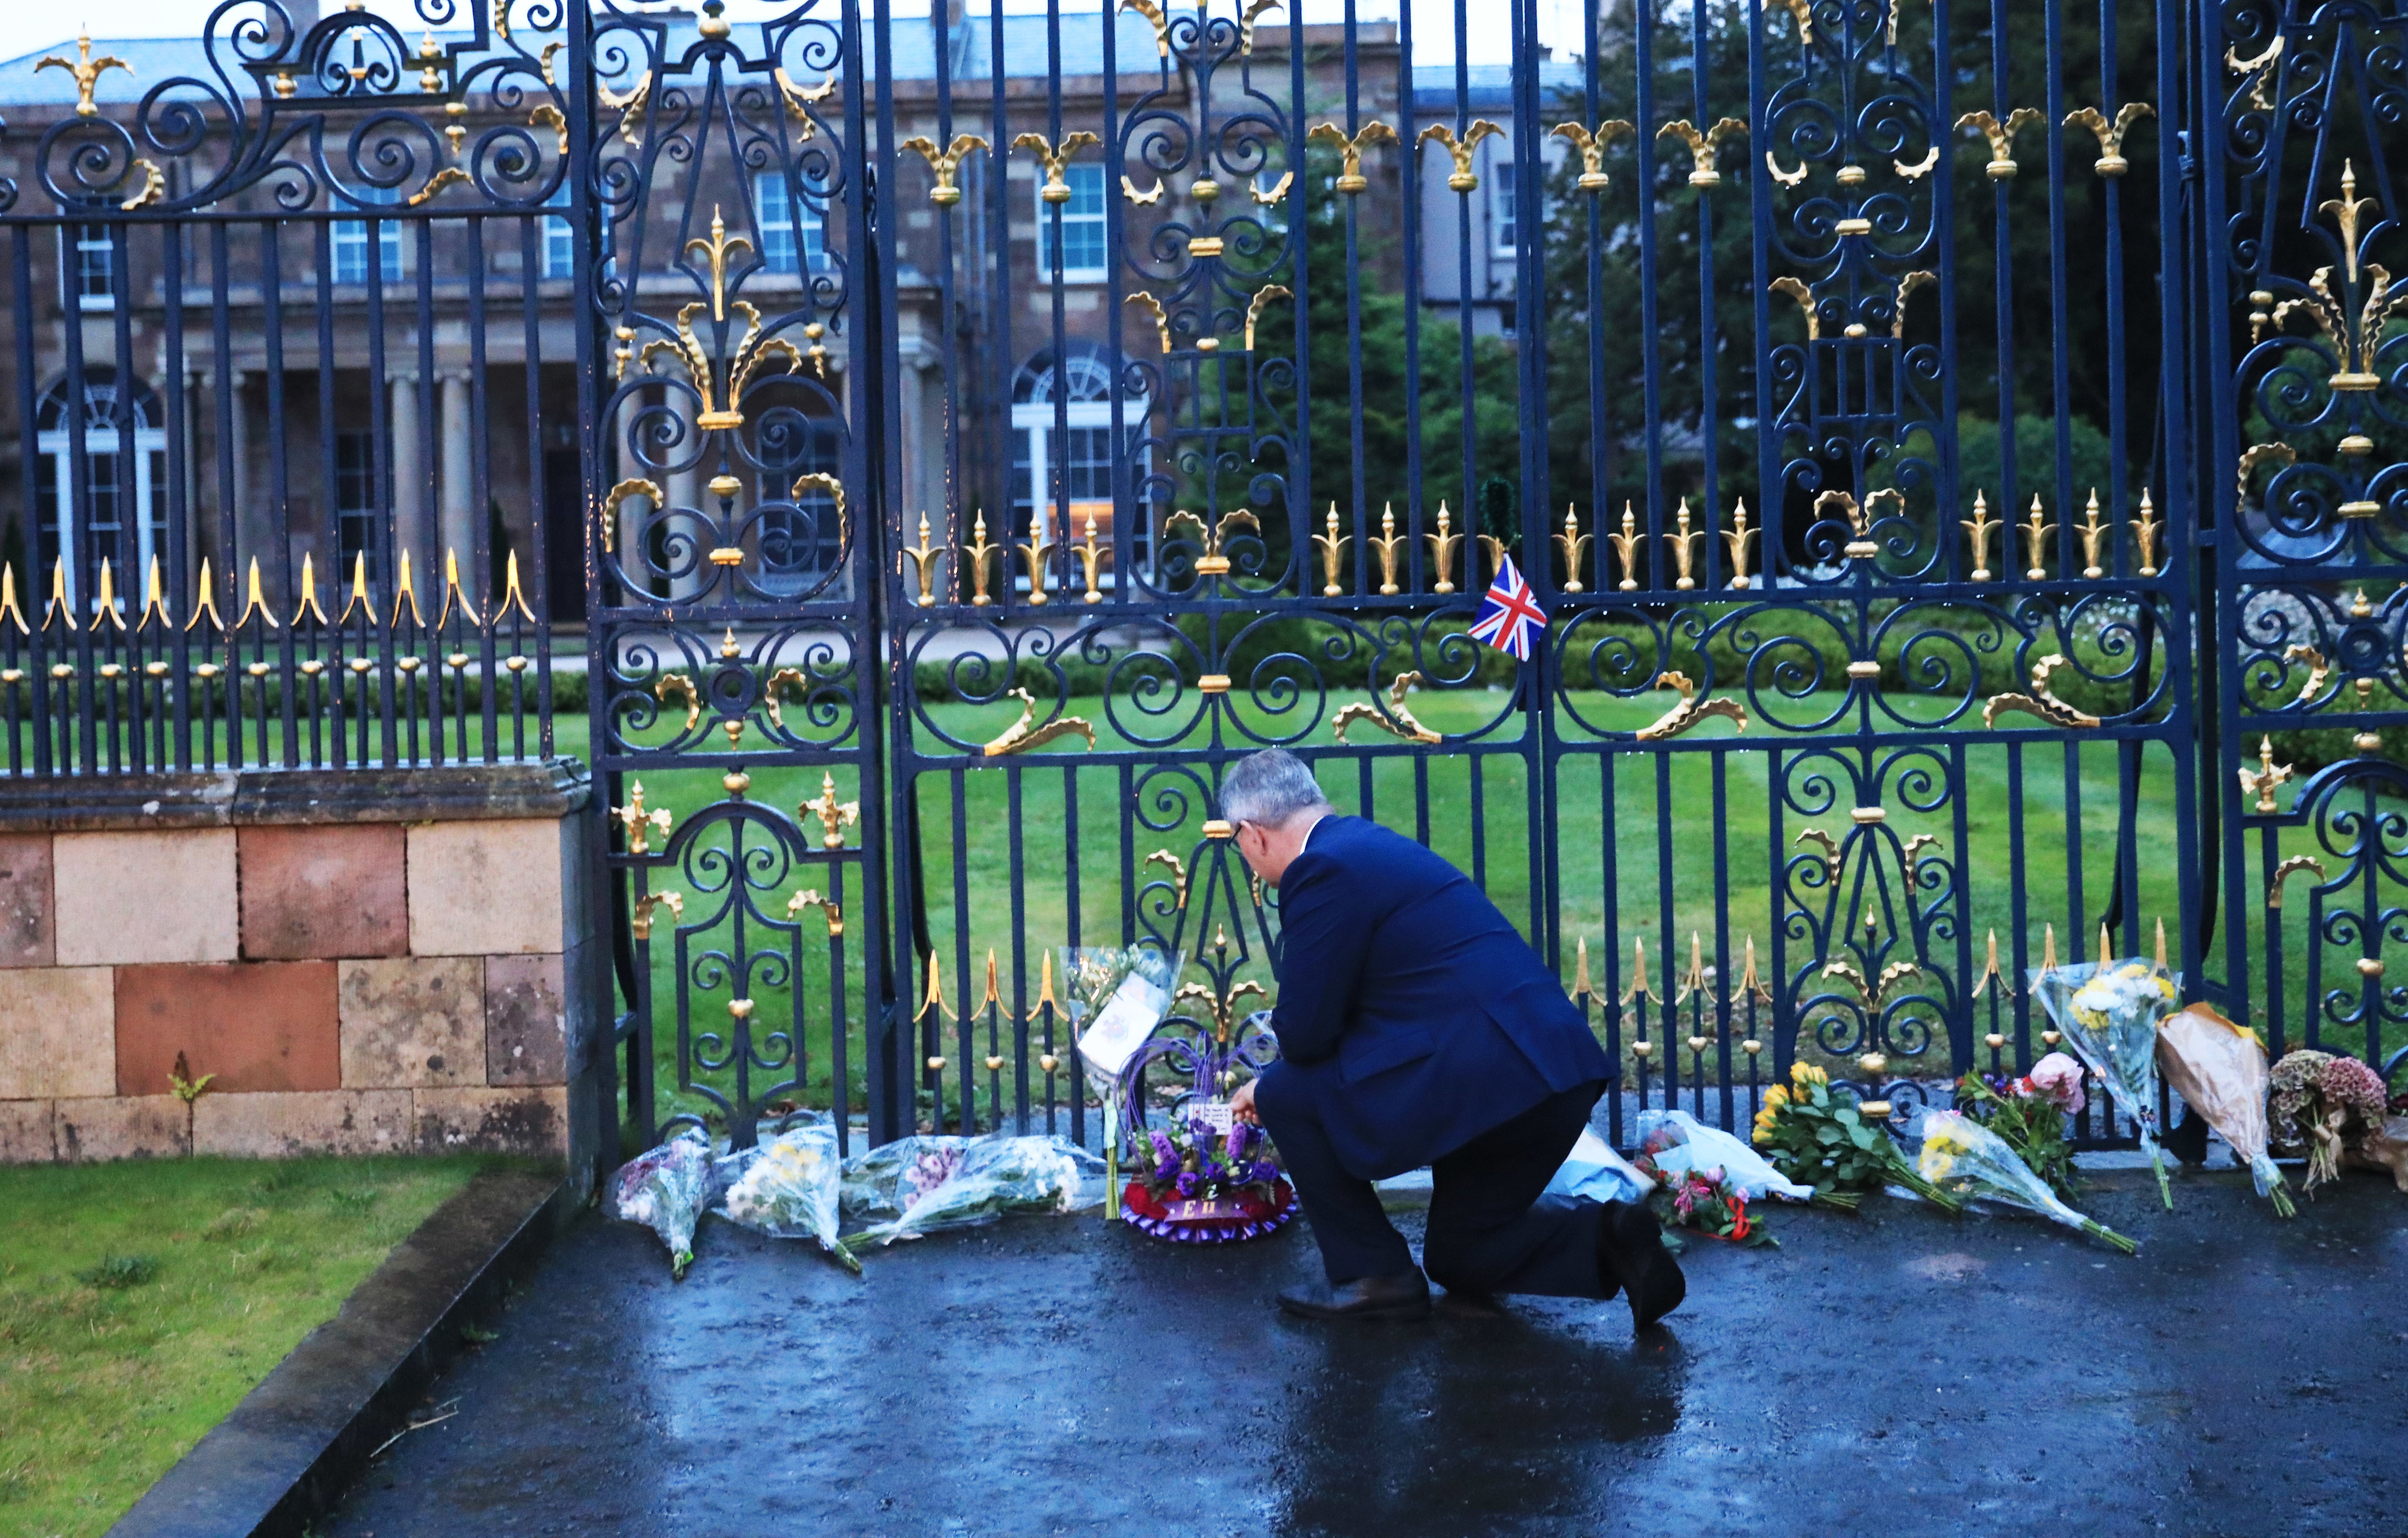 DUP leader Jeffrey Donaldson looks at floral tributes at Hillsborough Castle (Peter Morrison/PA)